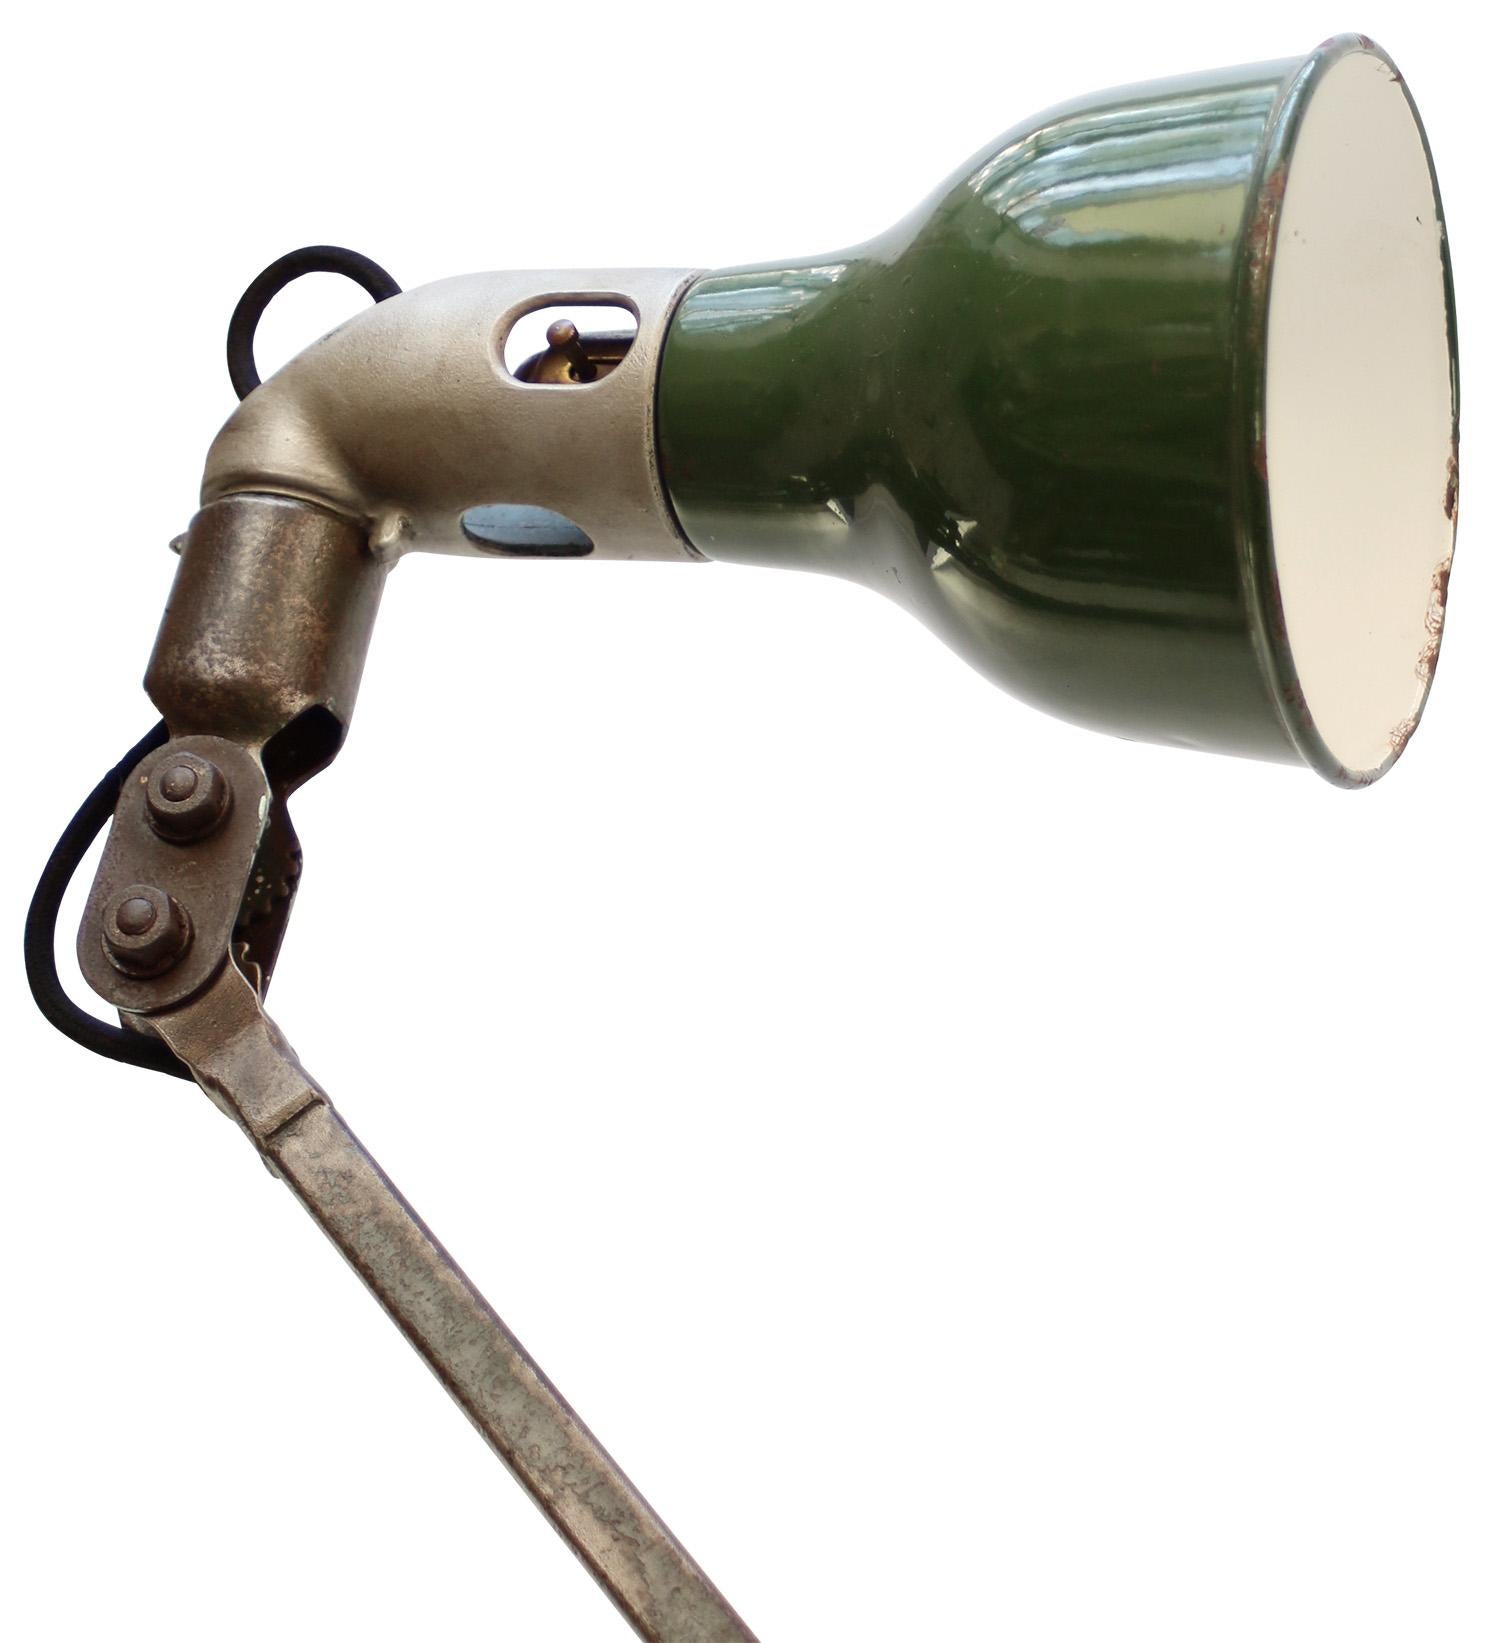 1930s Lampe de travail industrielle à 2 bras pour machiniste en fonte et émail vert par MEK ELEK, UK
réglable en hauteur et en angle
y compris la fiche et l'interrupteur

Diamètre de la base 13,5 cm

Support d'ampoule B22

Poids : 4,00 kg /